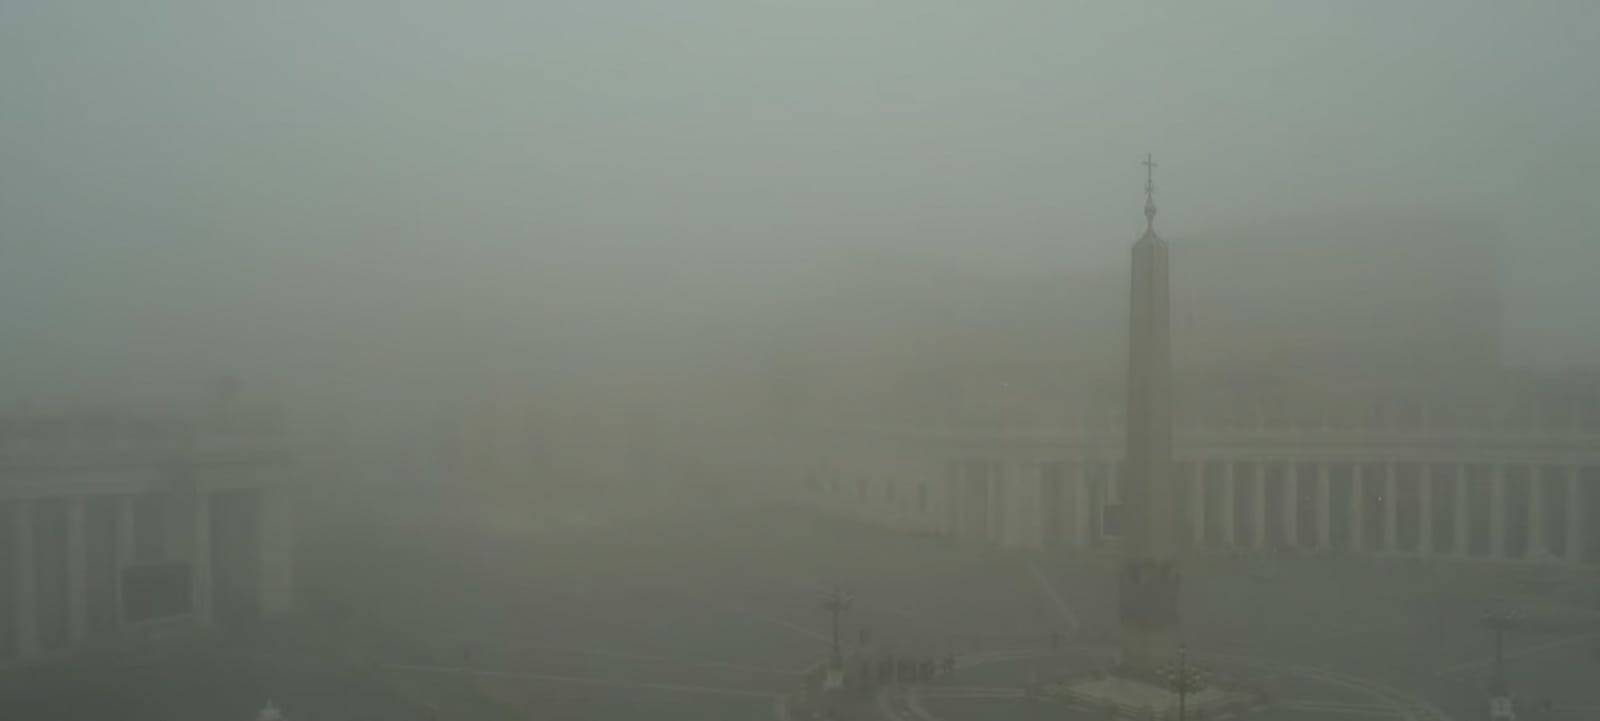 Roma si sveglia con la nebbia: il cupolone sparisce